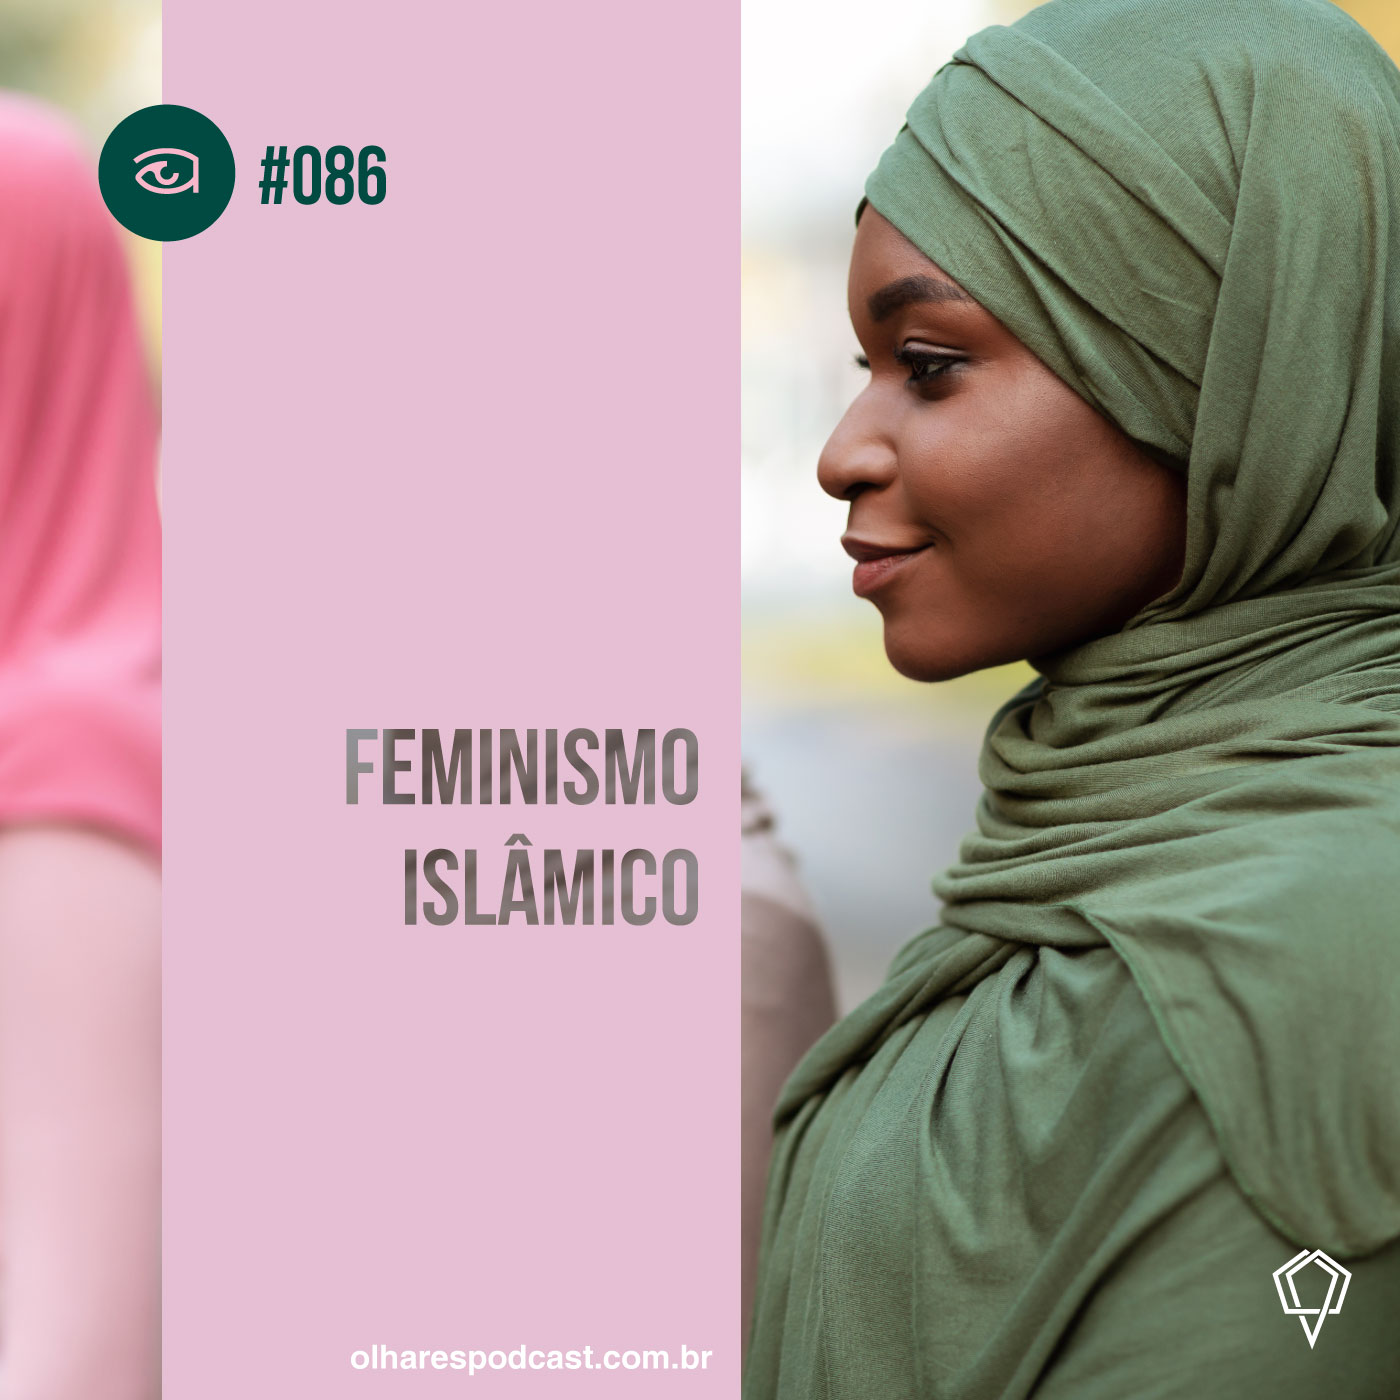 Olhares #086 Feminismo islâmico